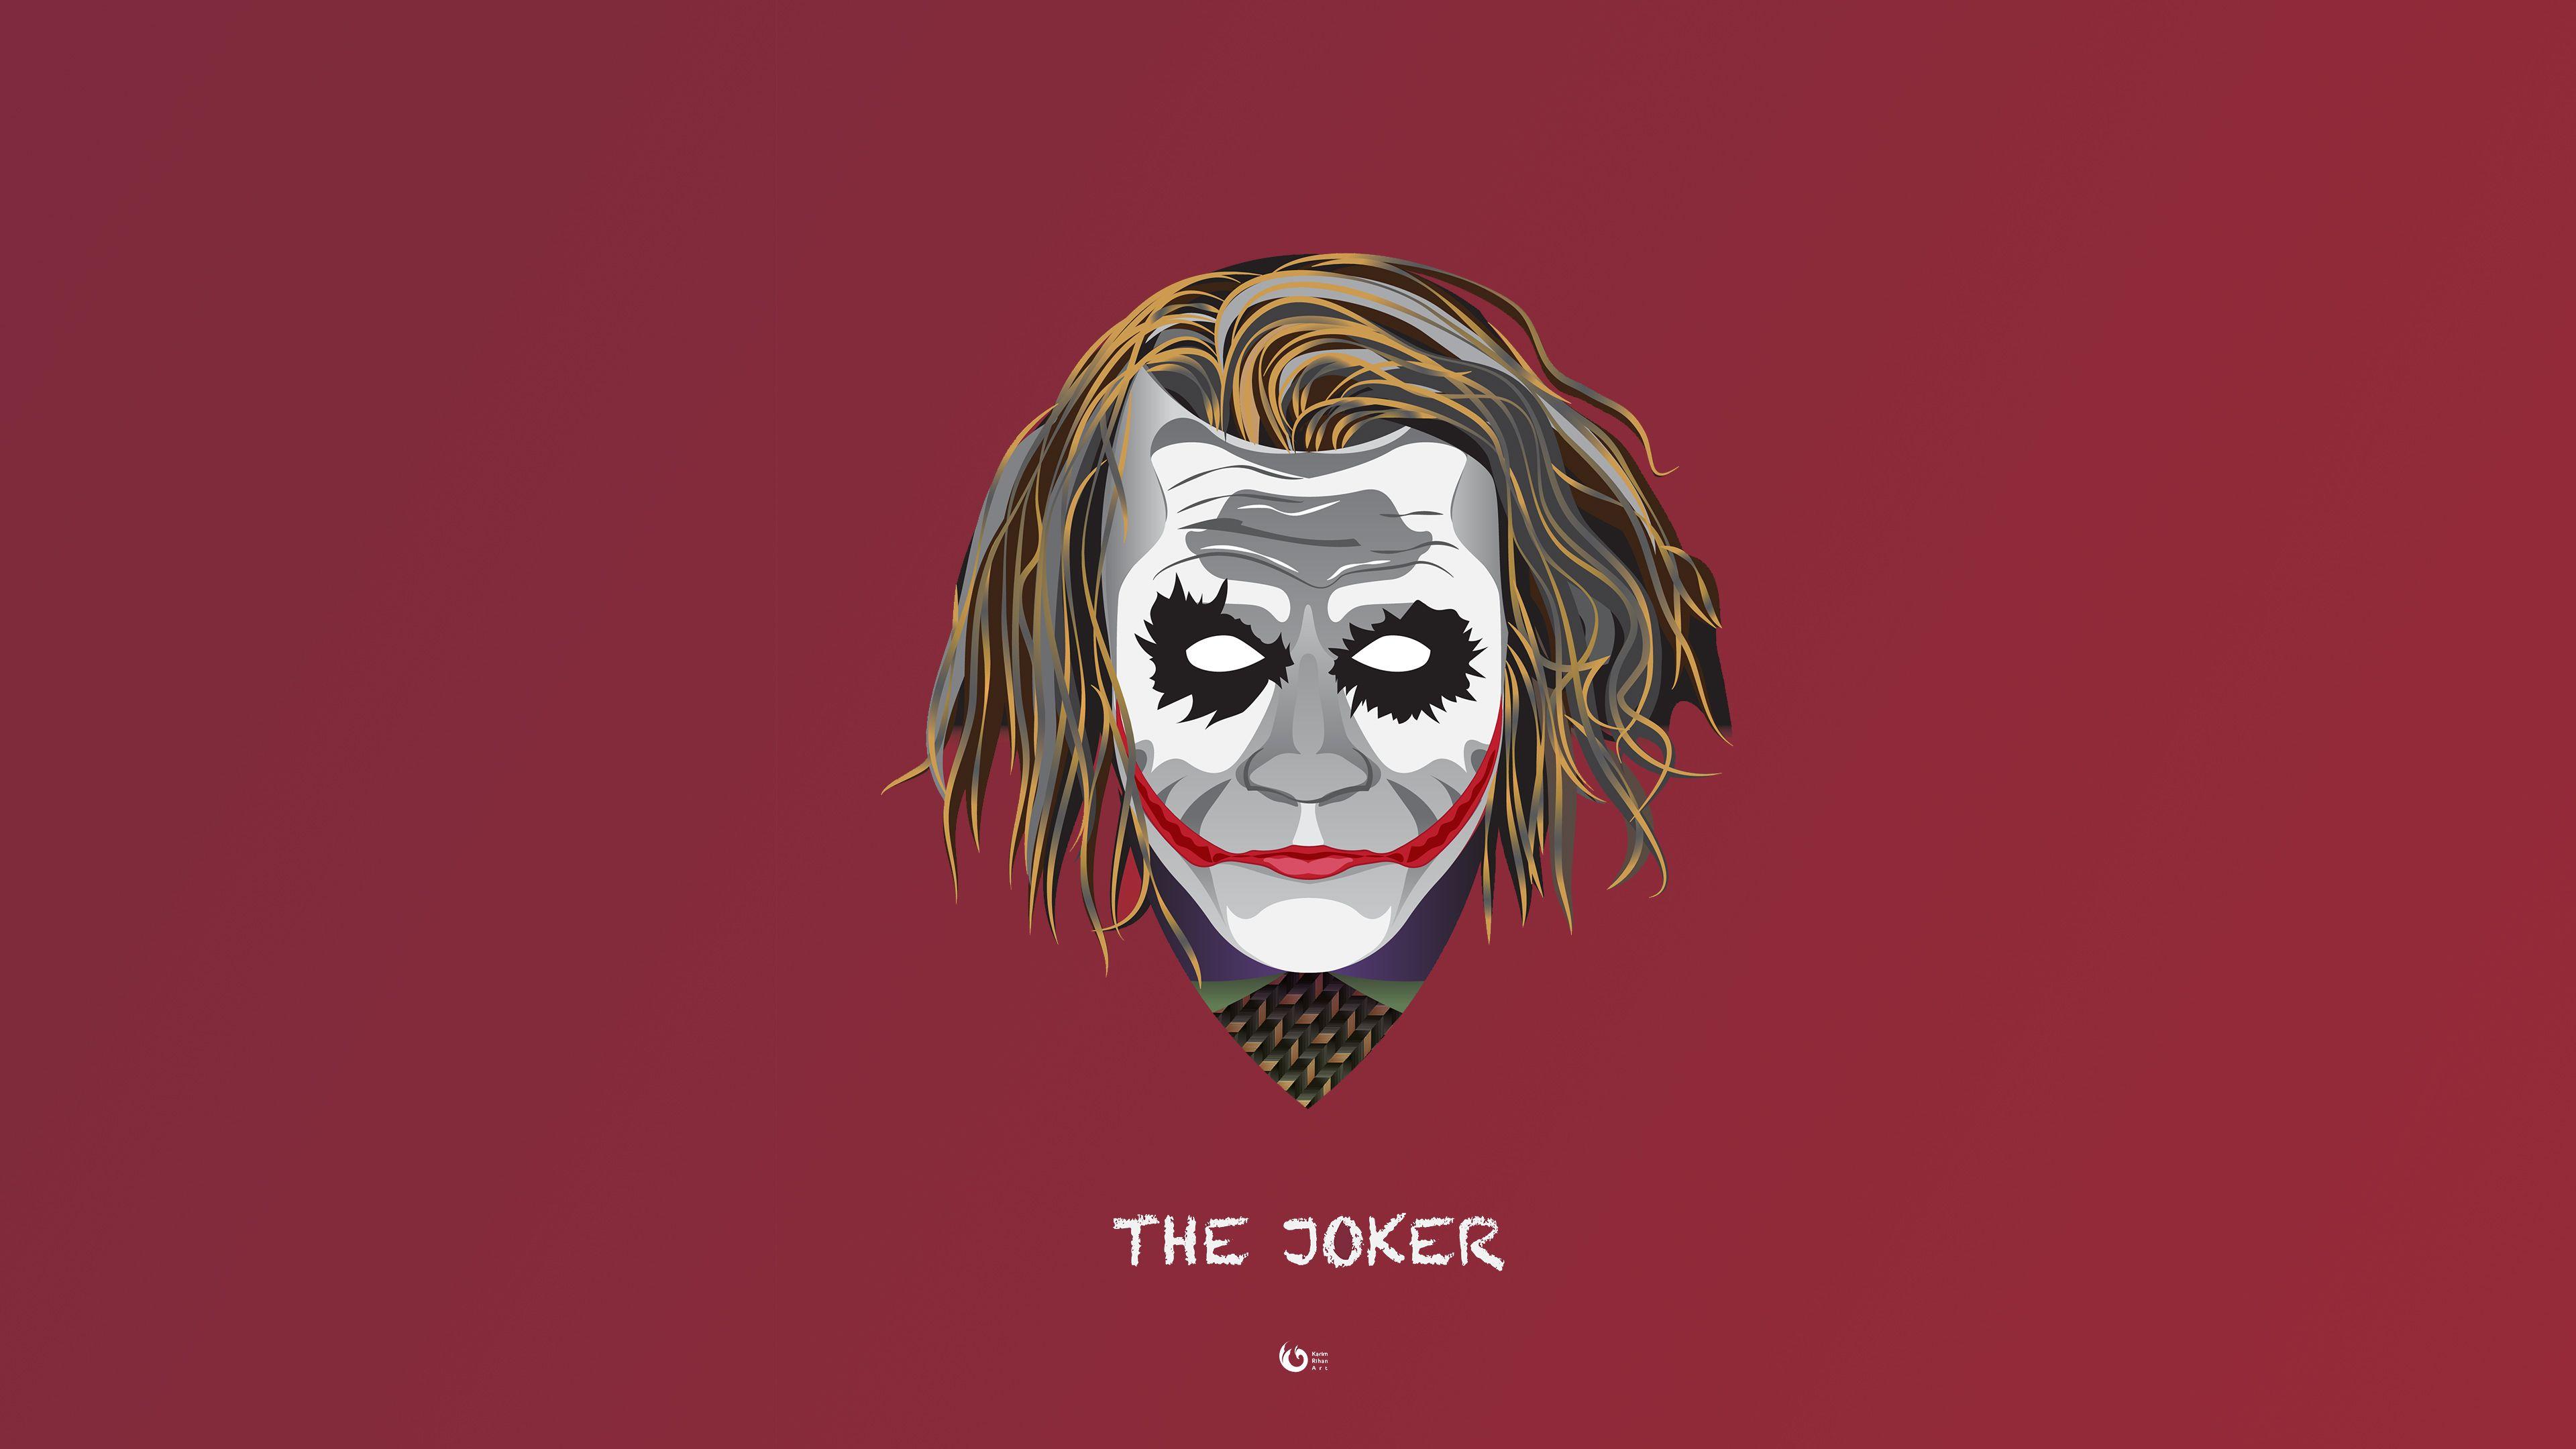 The Joker Minimal 4k supervillain wallpaper, minimalist